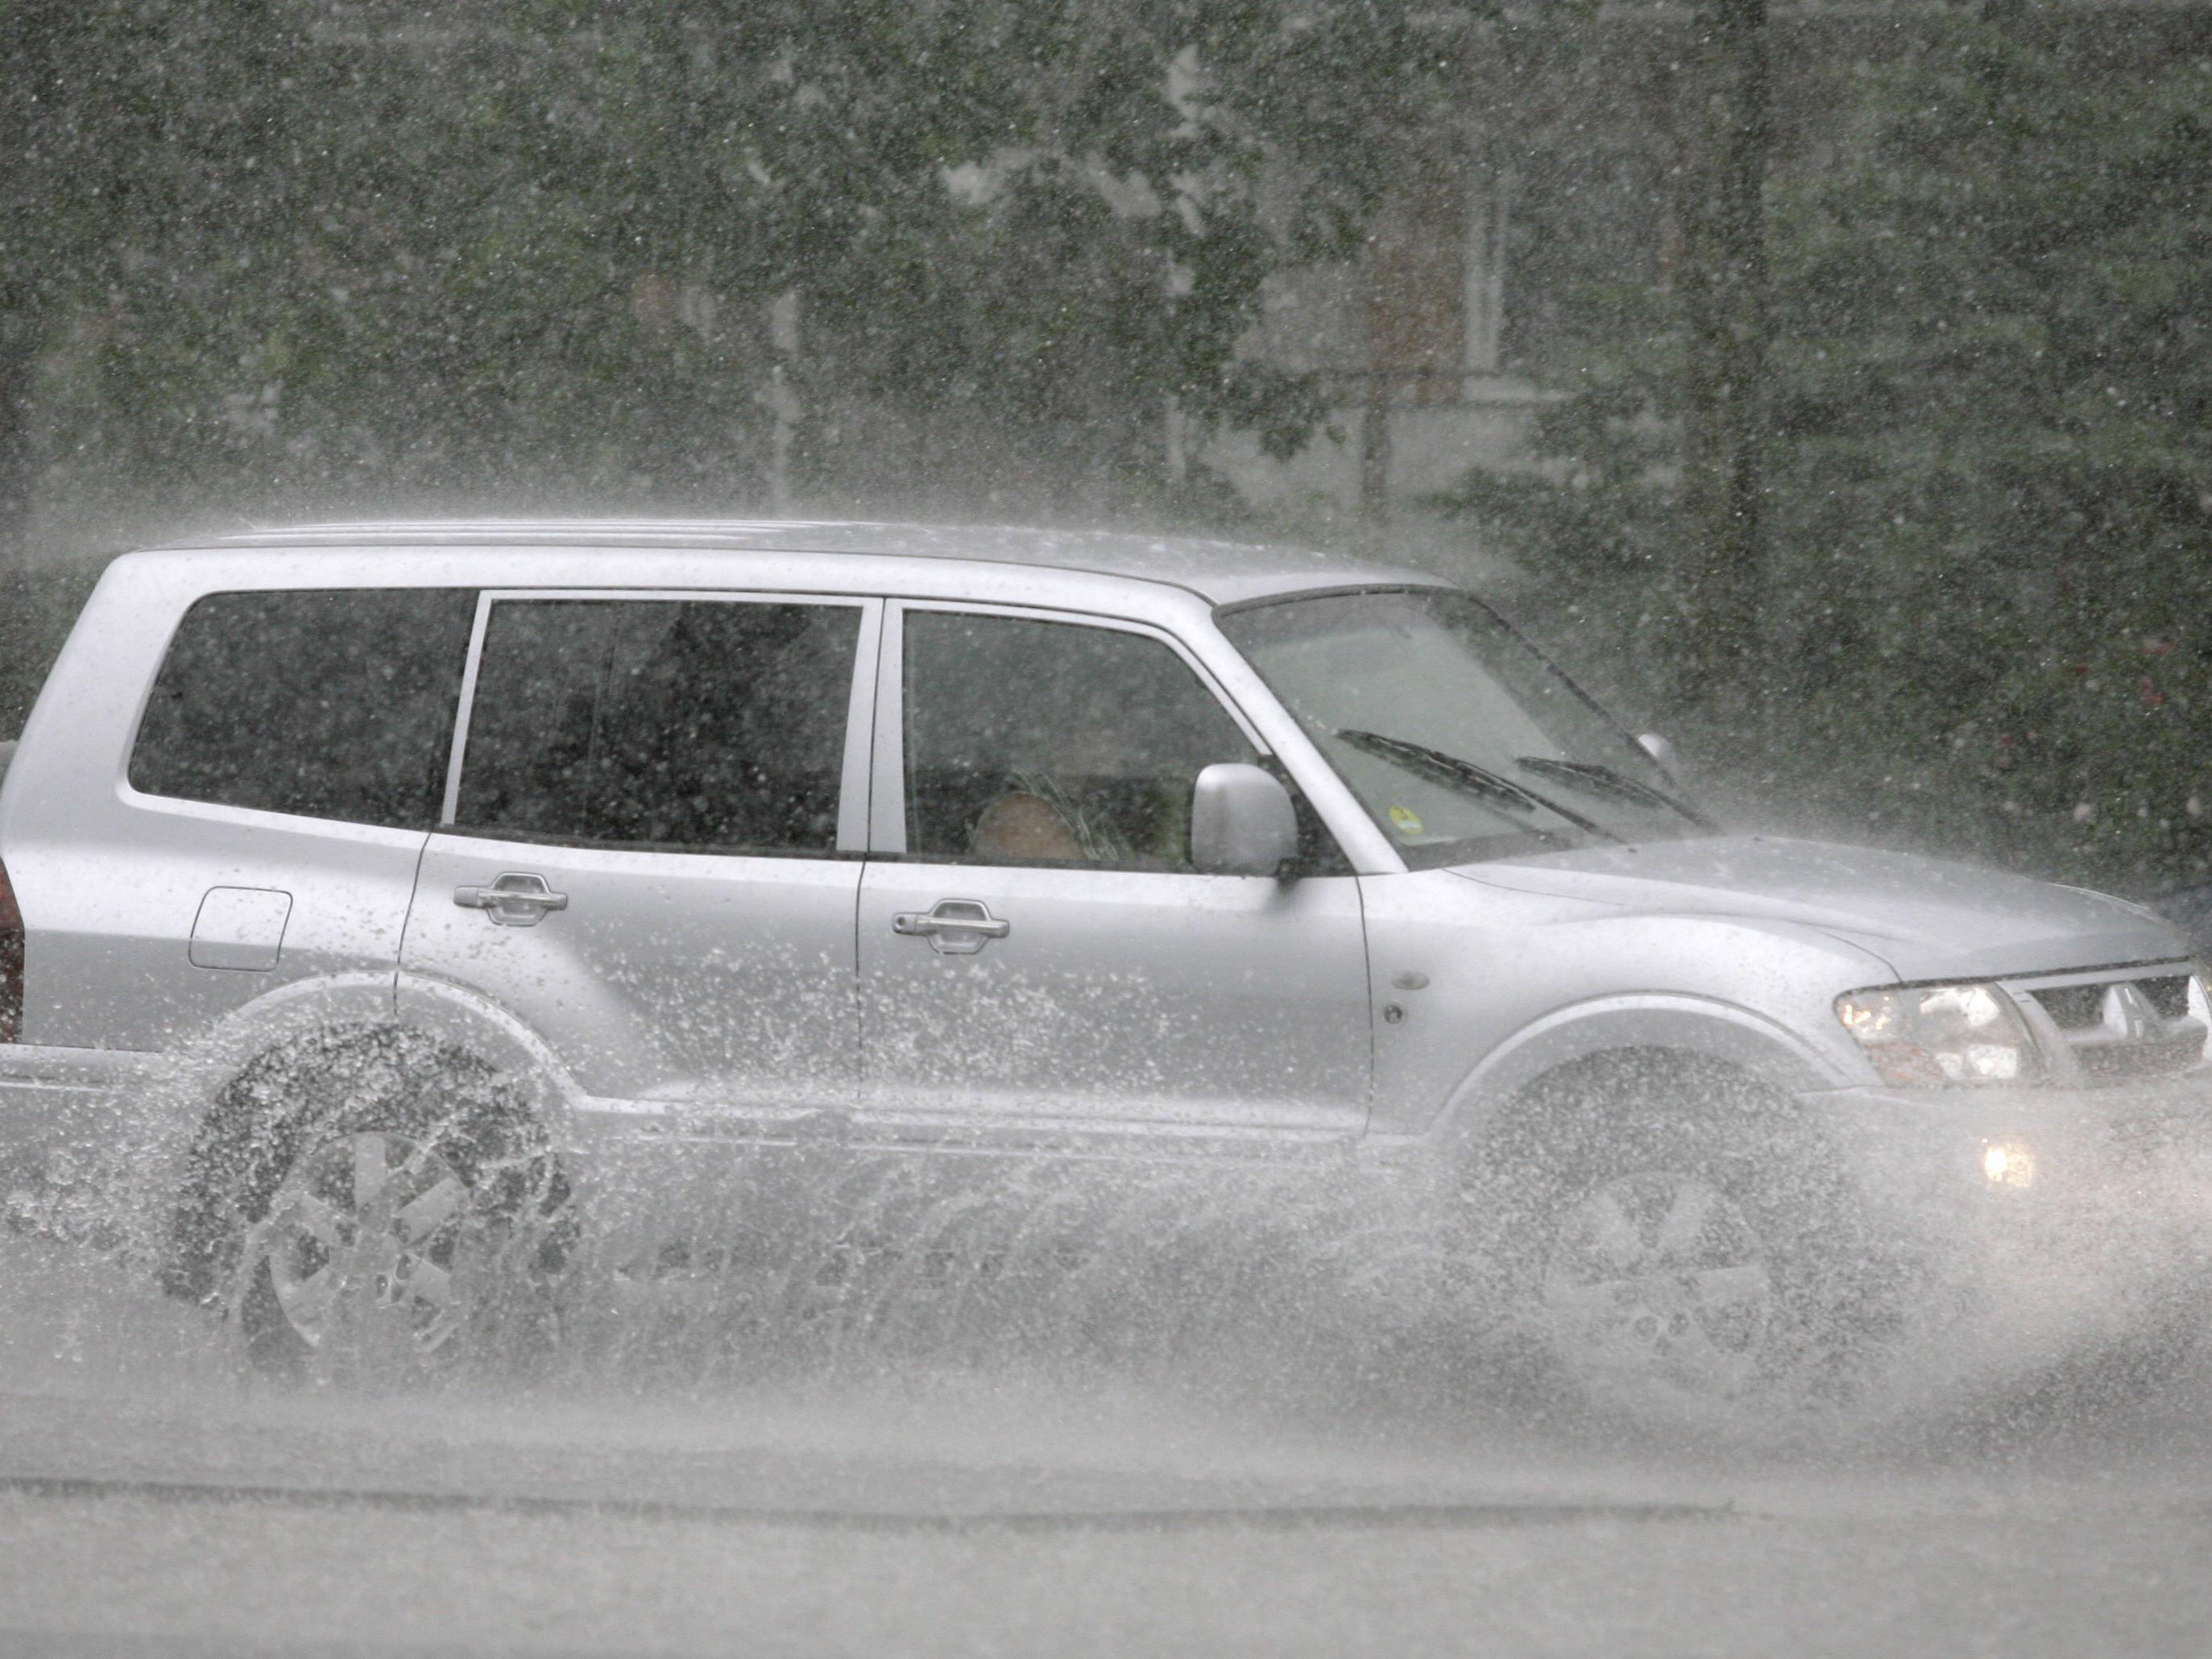 Schlechtes Wetter erhöht das Unfallrisiko im Straßenverkehr.Schlechtes Wetter erhöht das Unfallrisiko im Straßenverkehr.